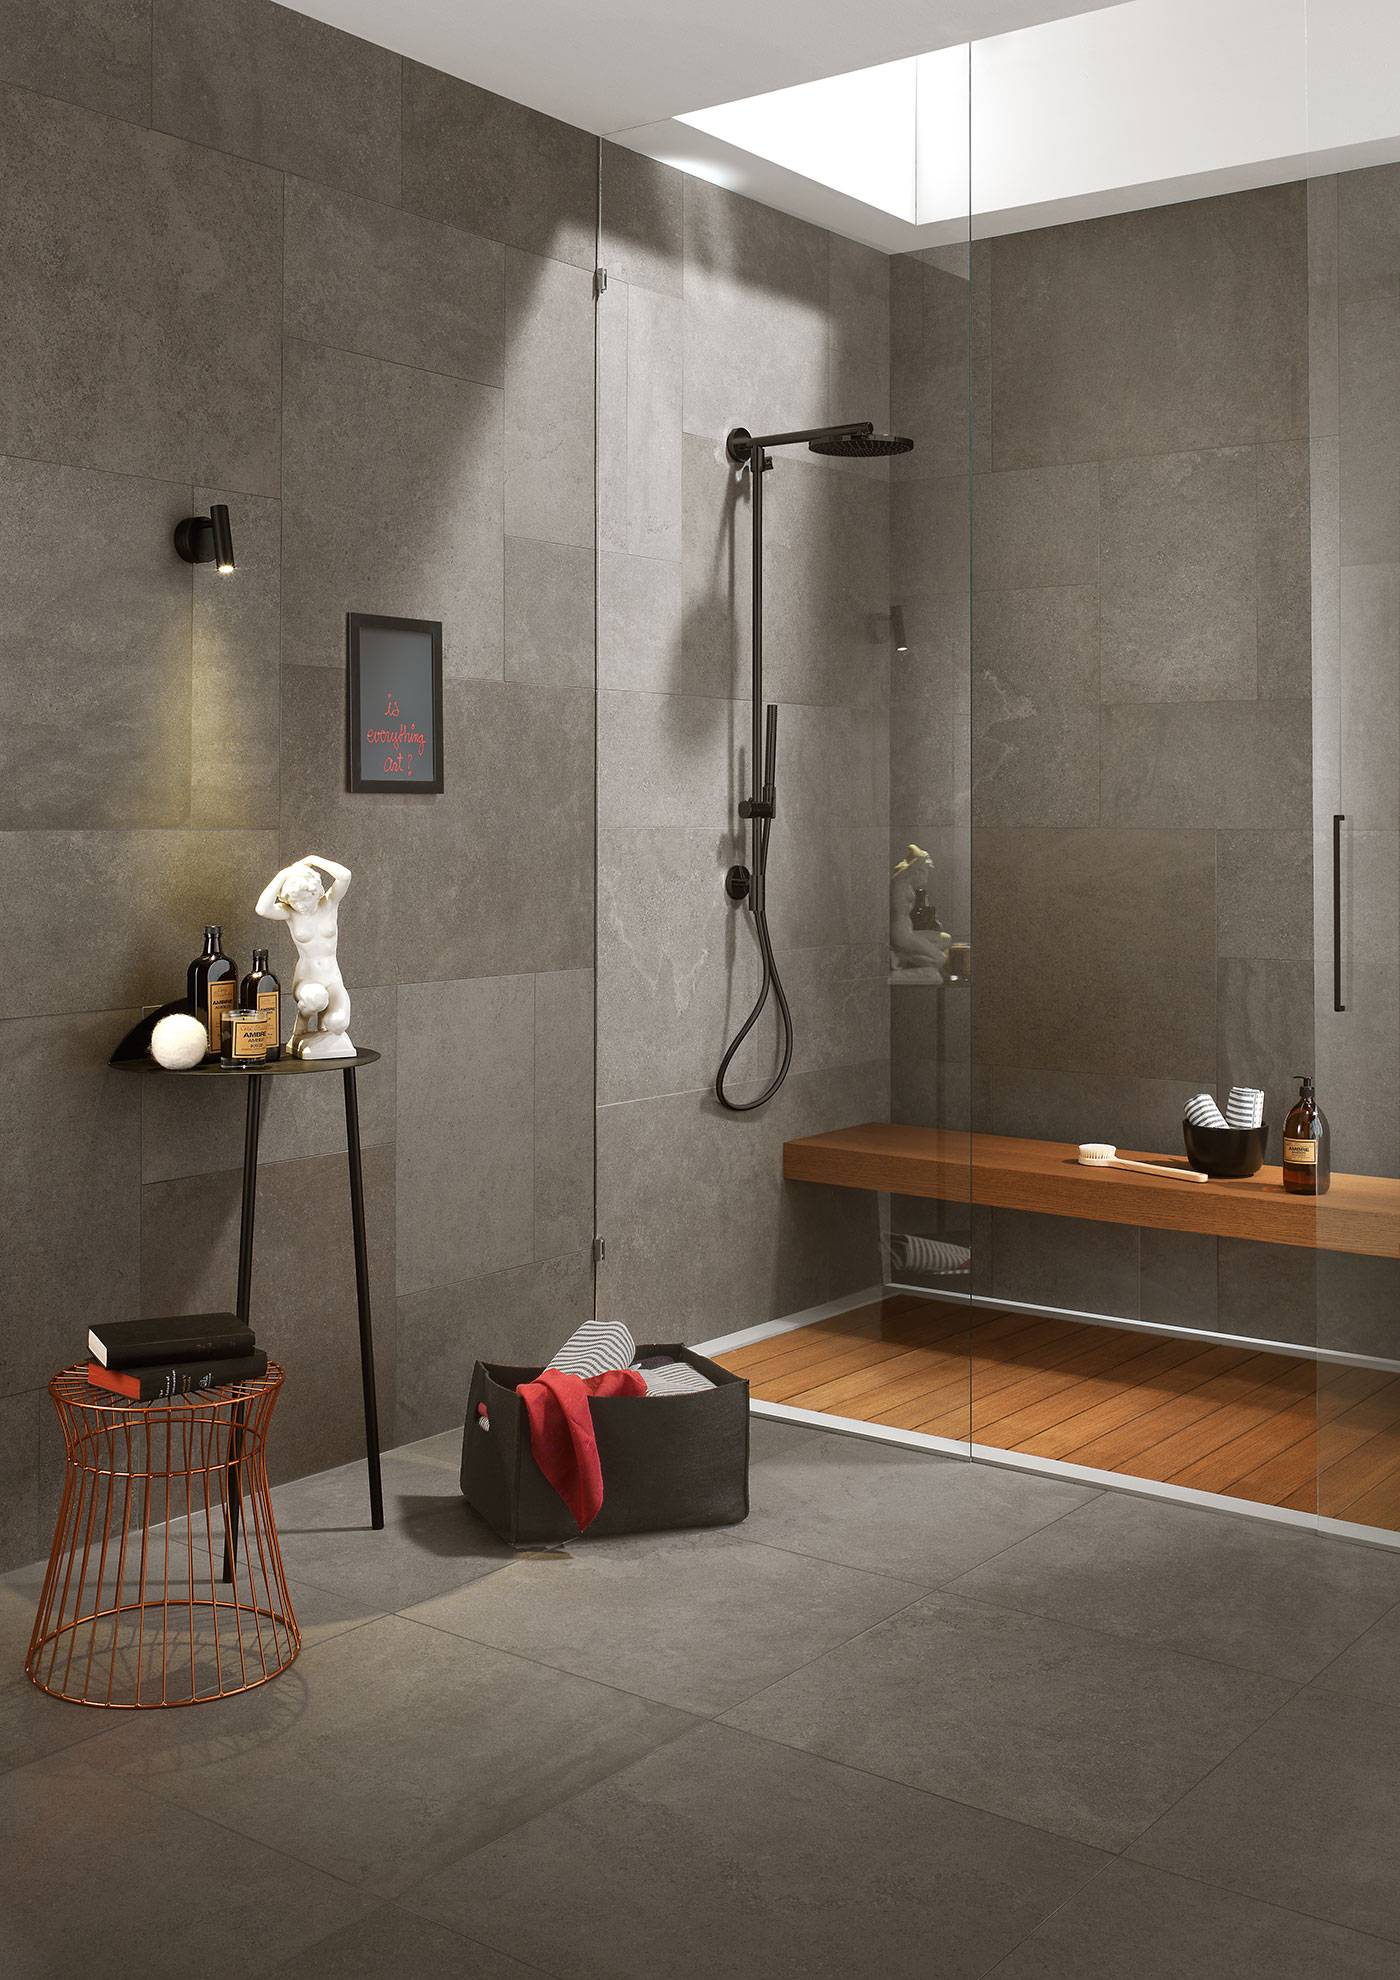 déco salle de bain 2019 gris et bois aménagement contemporain